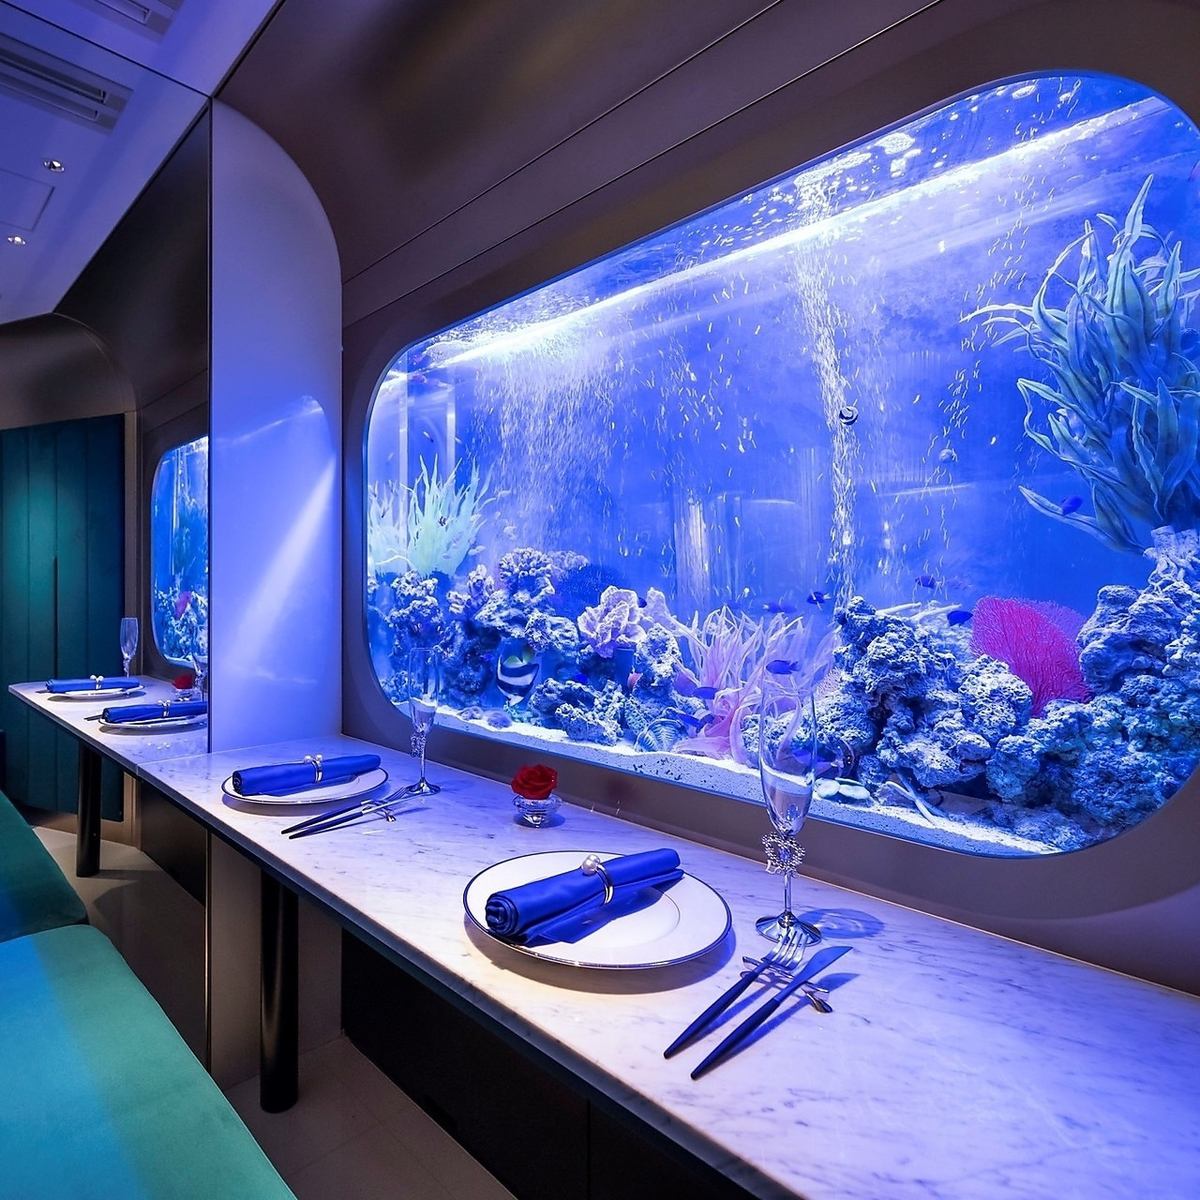 鱼儿在水族馆里漂亮地洄游，营造出梦幻浪漫的空间